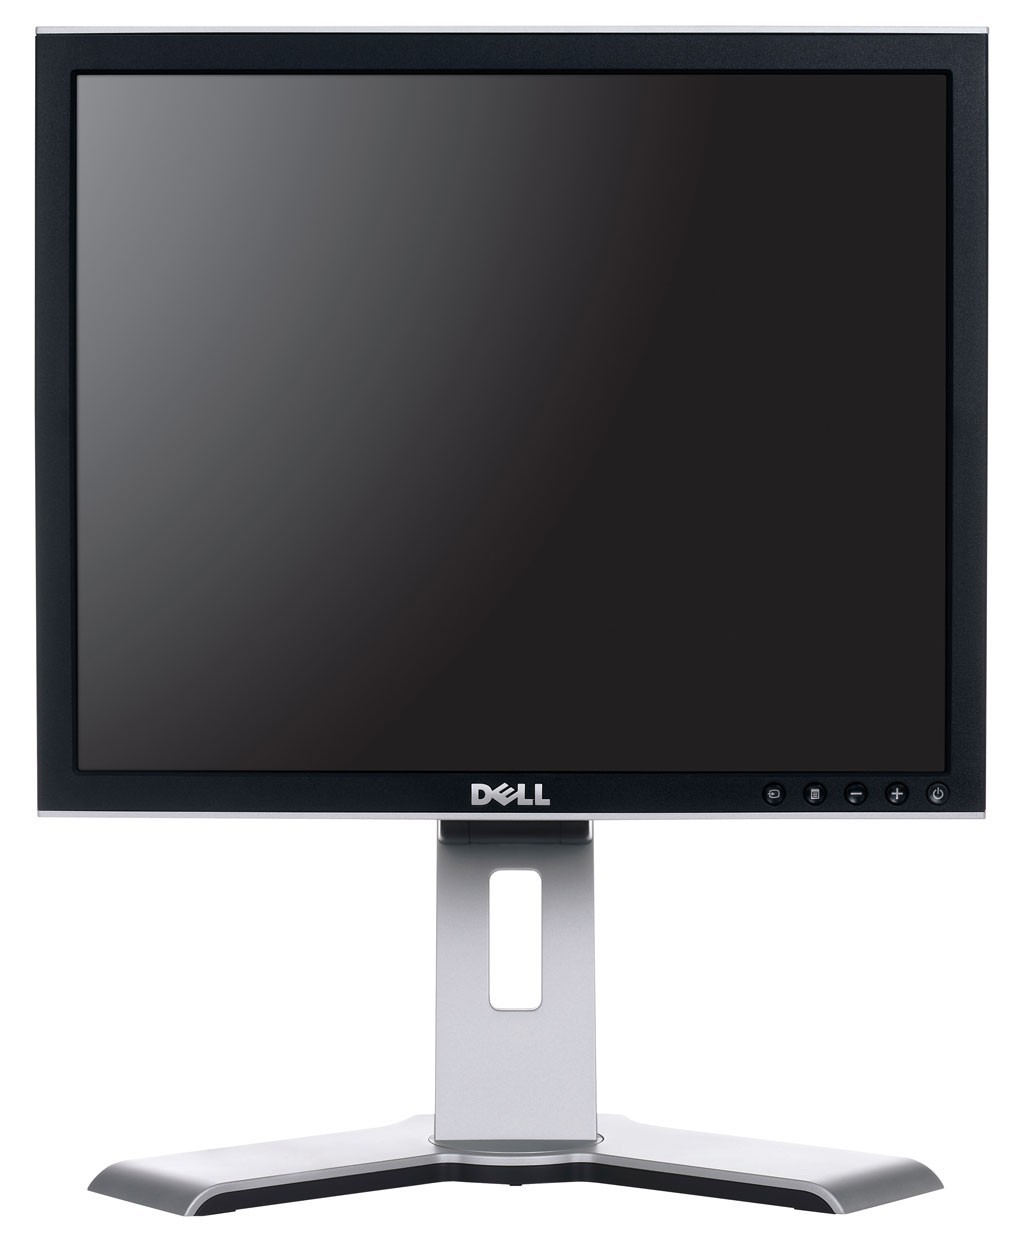 Monitor DELL 1708fp LCD, 17 Inch, 5ms, 1280 x 1024, VGA